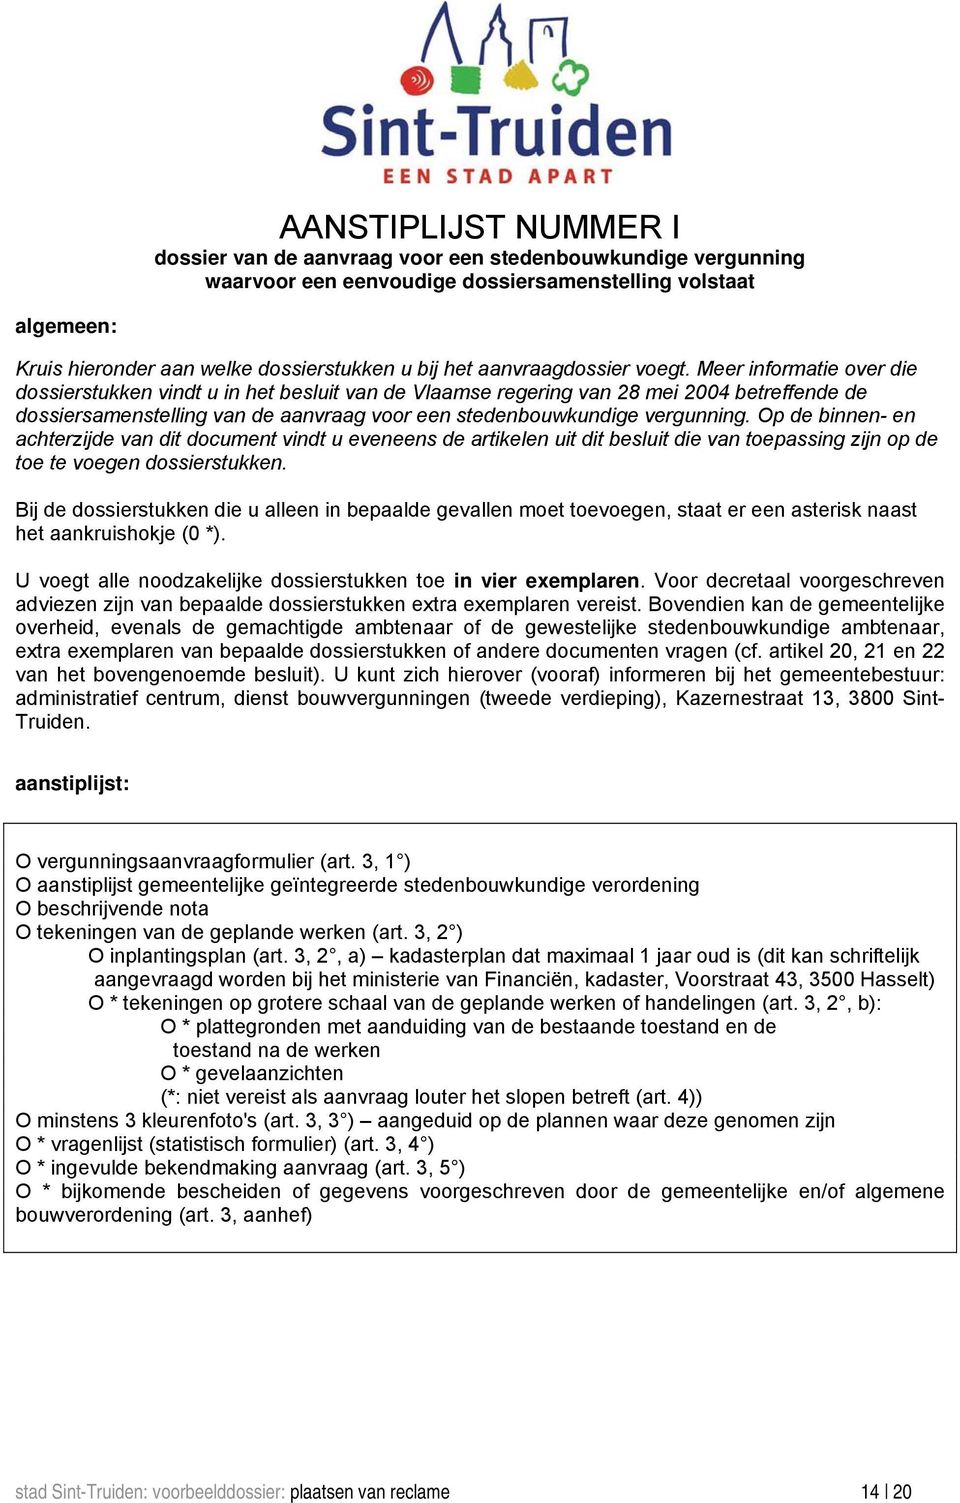 Meer informatie over die dossierstukken vindt u in het besluit van de Vlaamse regering van 28 mei 2004 betreffende de dossiersamenstelling van de aanvraag voor een stedenbouwkundige vergunning.